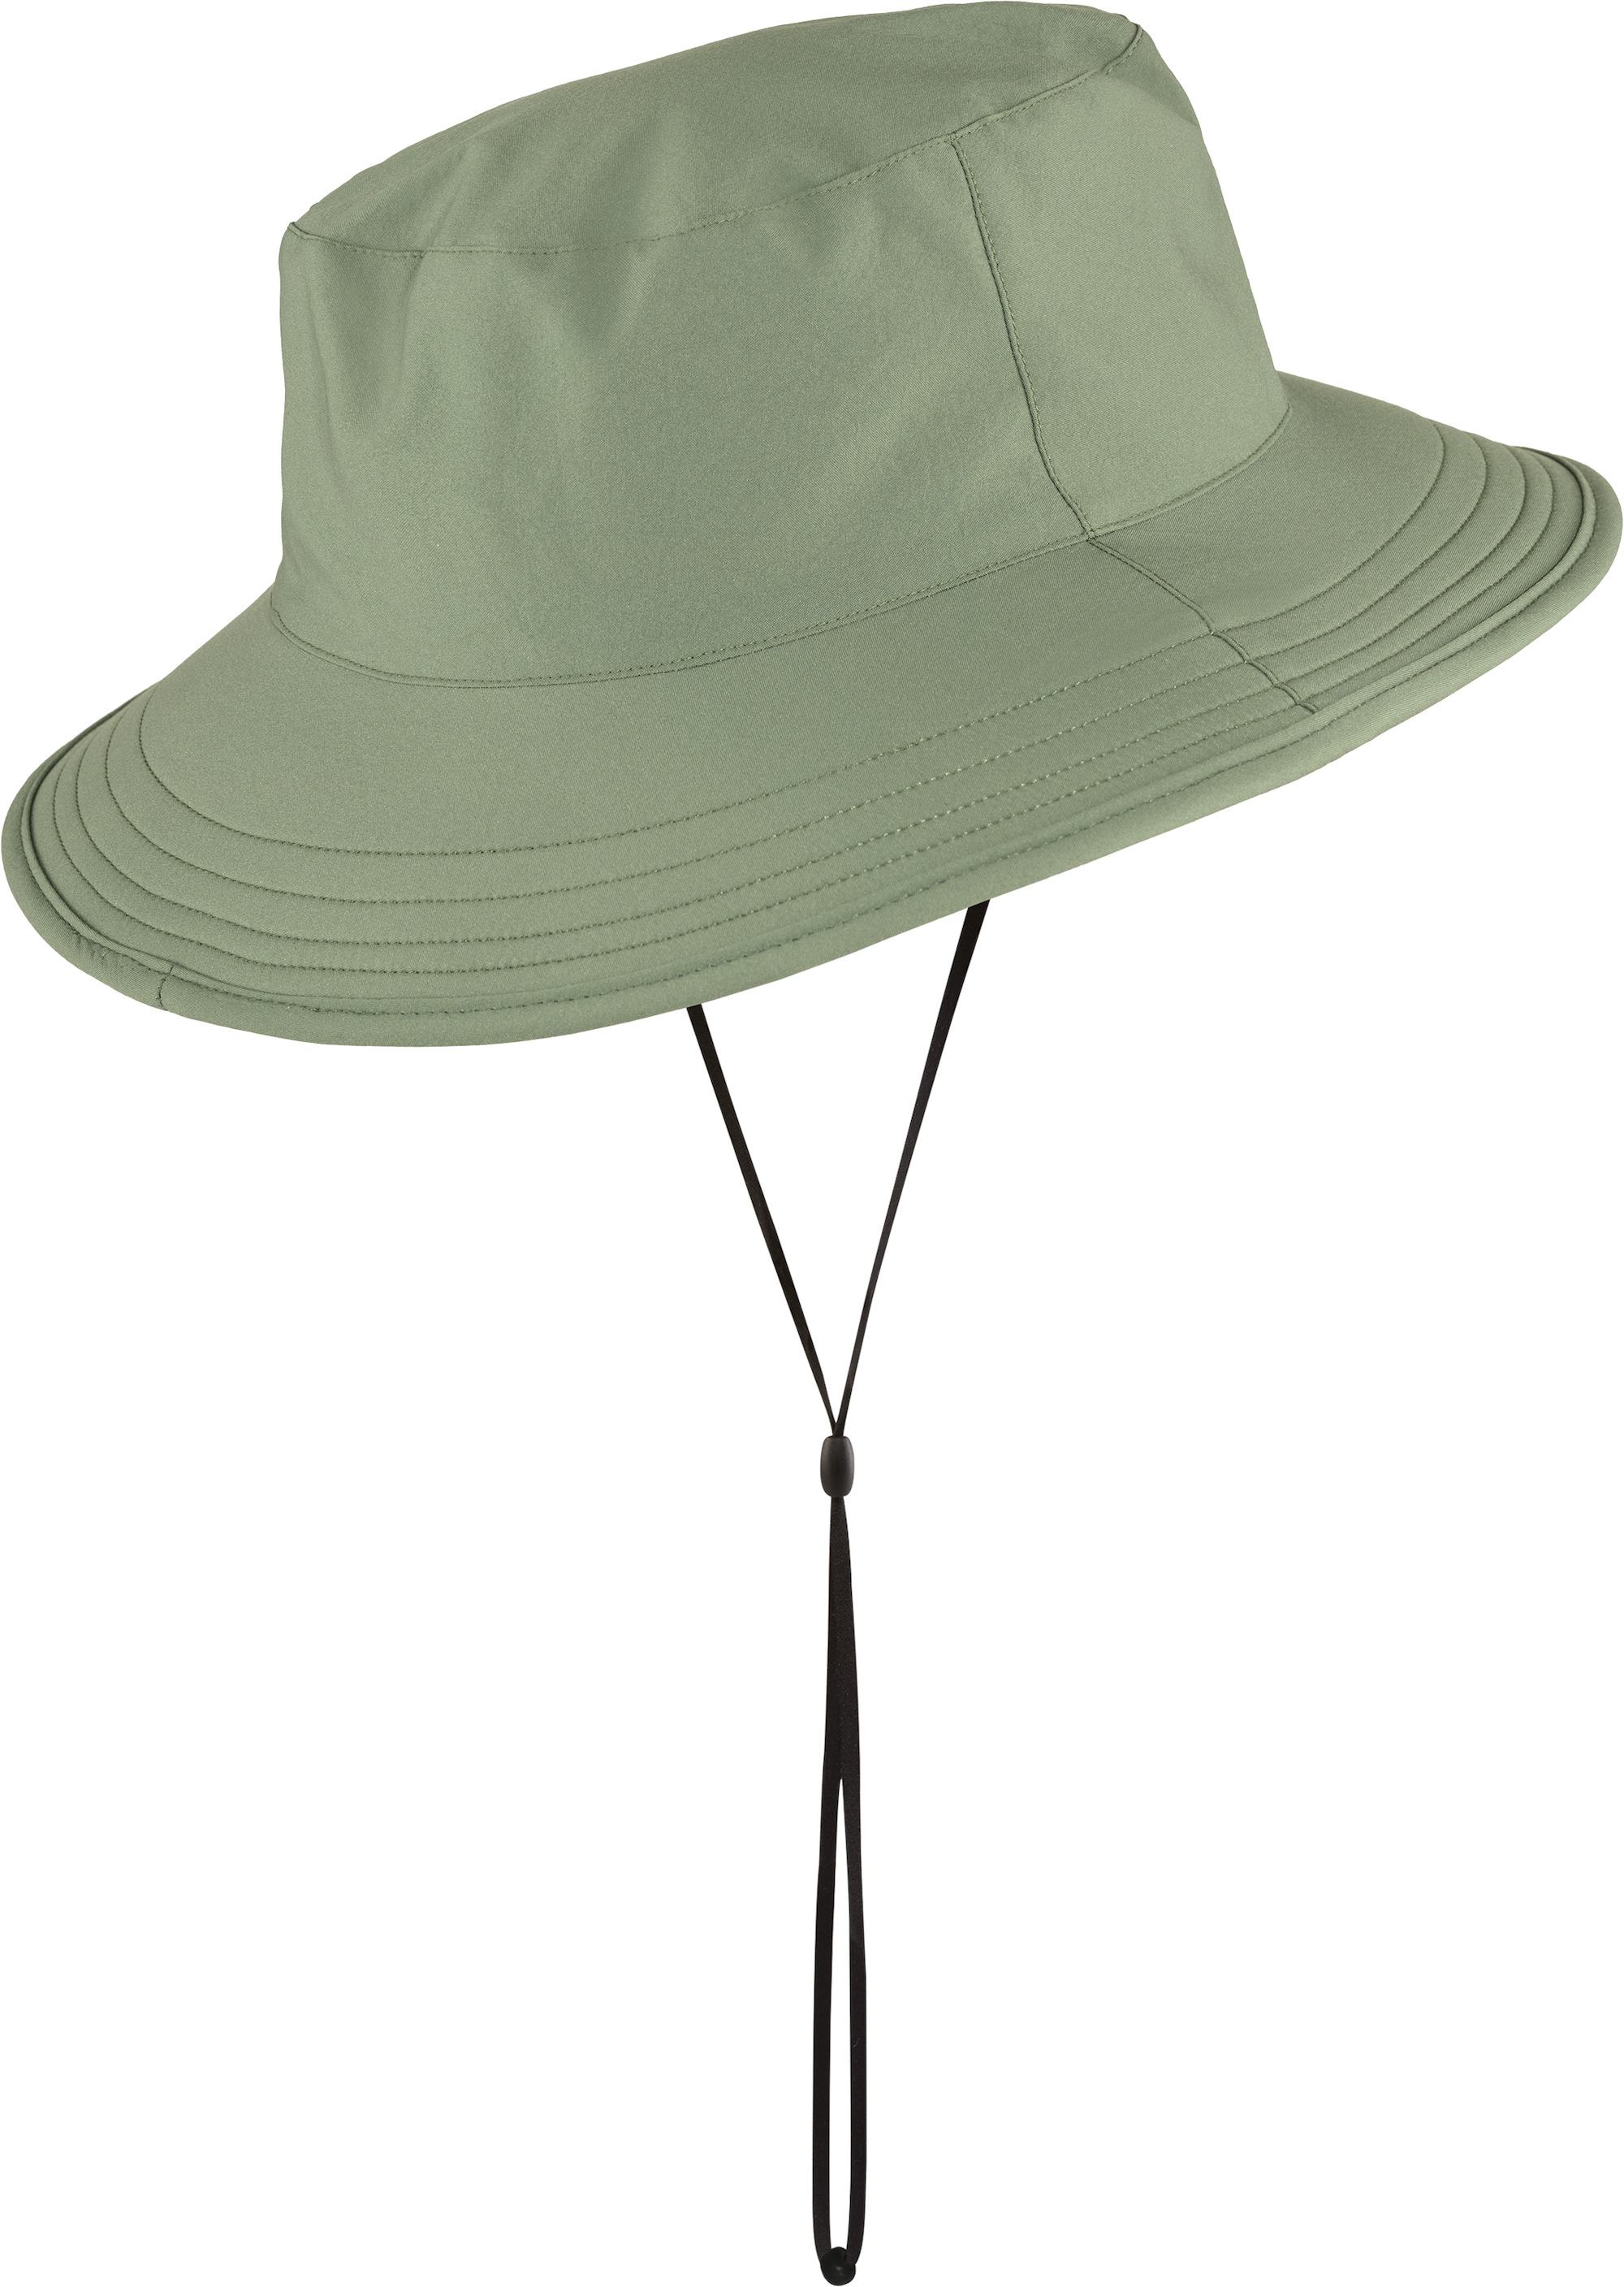 FjallravenFjallraven 77273 Abisko Summer Hat Hat Unisex Dark Grey S 